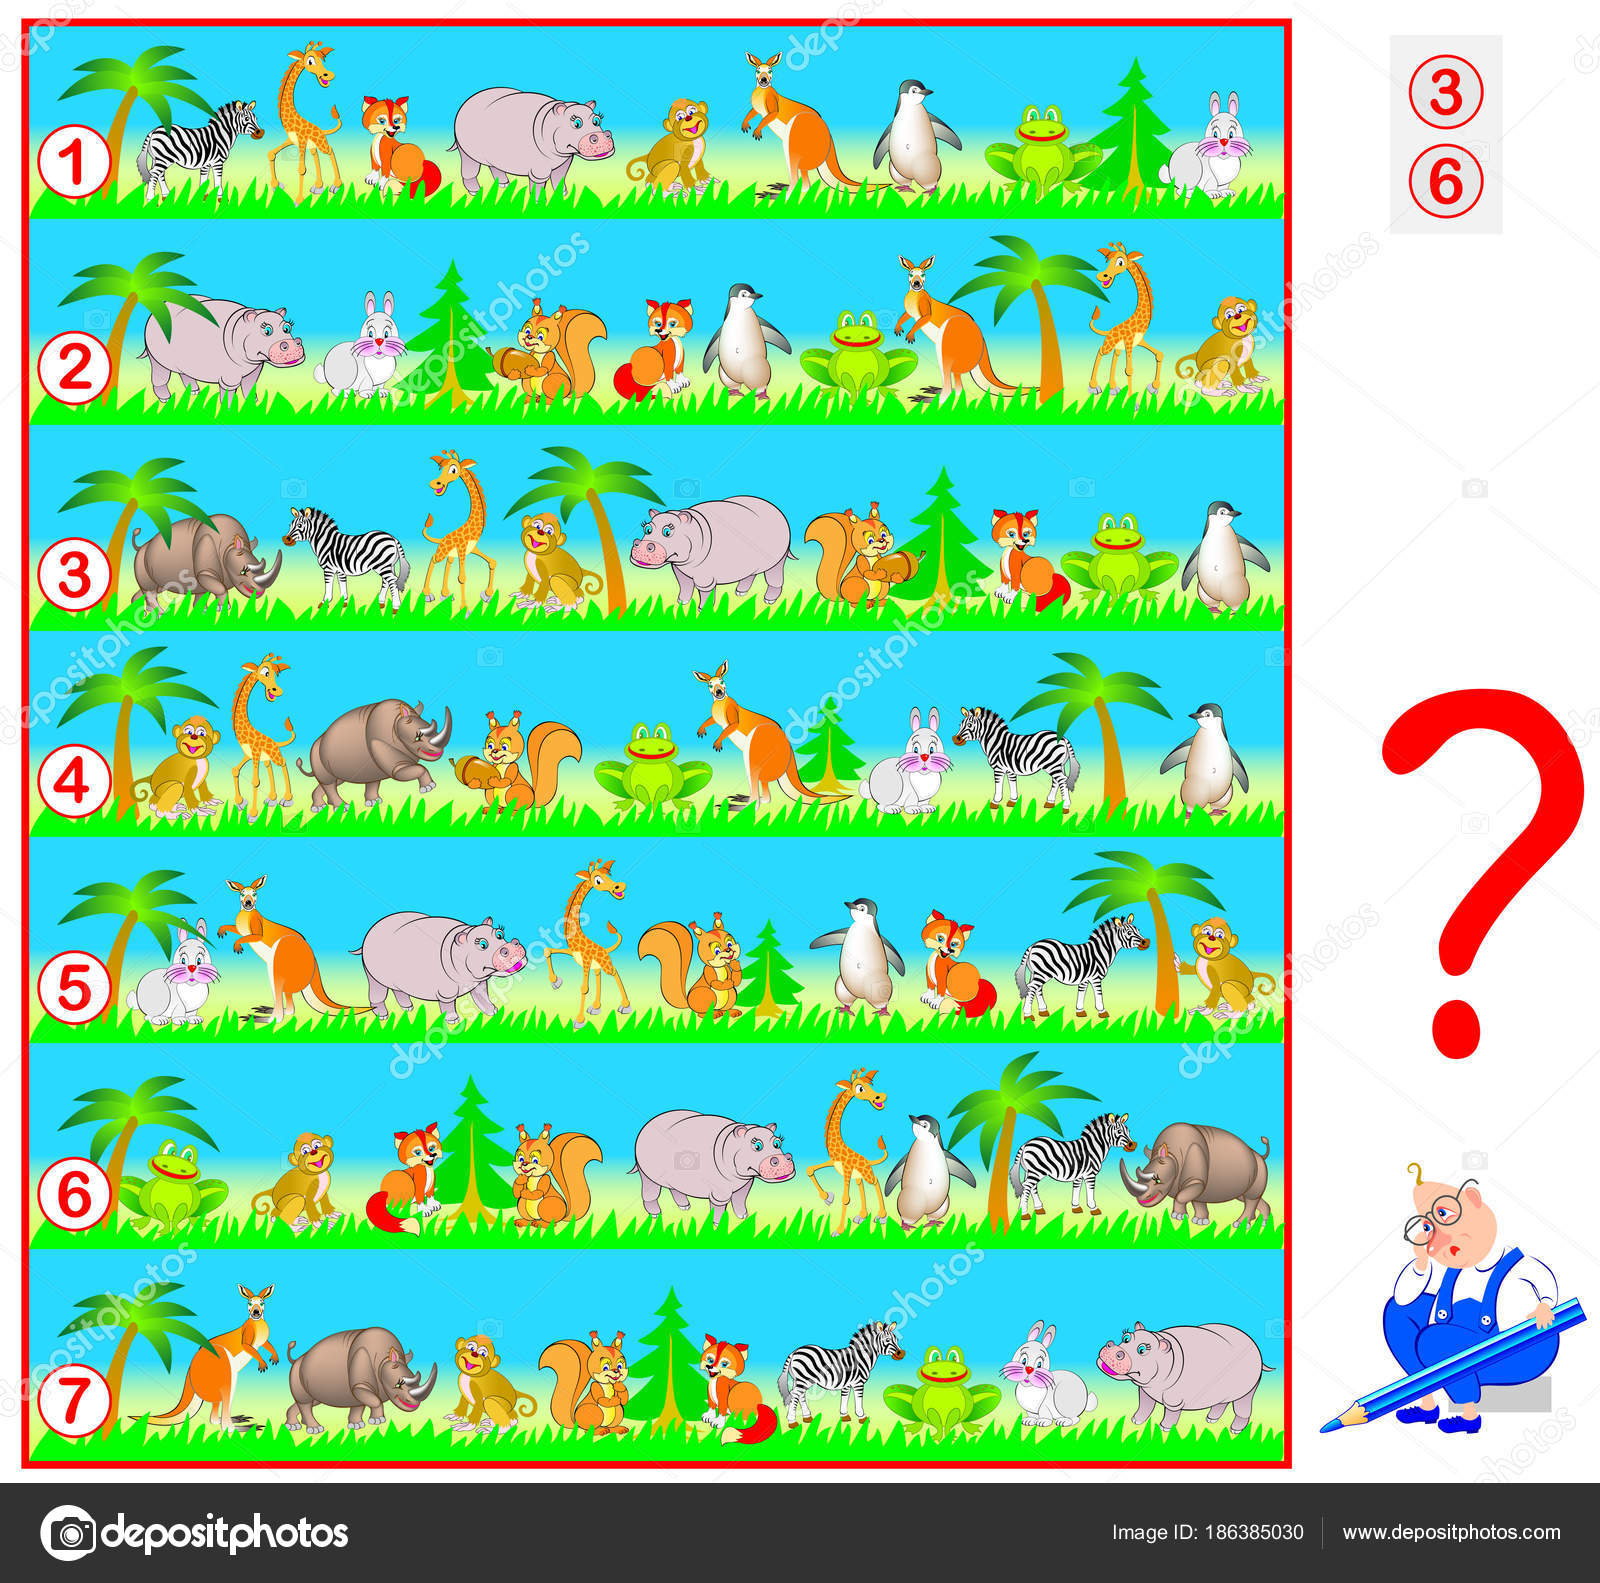 Jogos de quebra-cabeça com personagens de animais de desenho animado